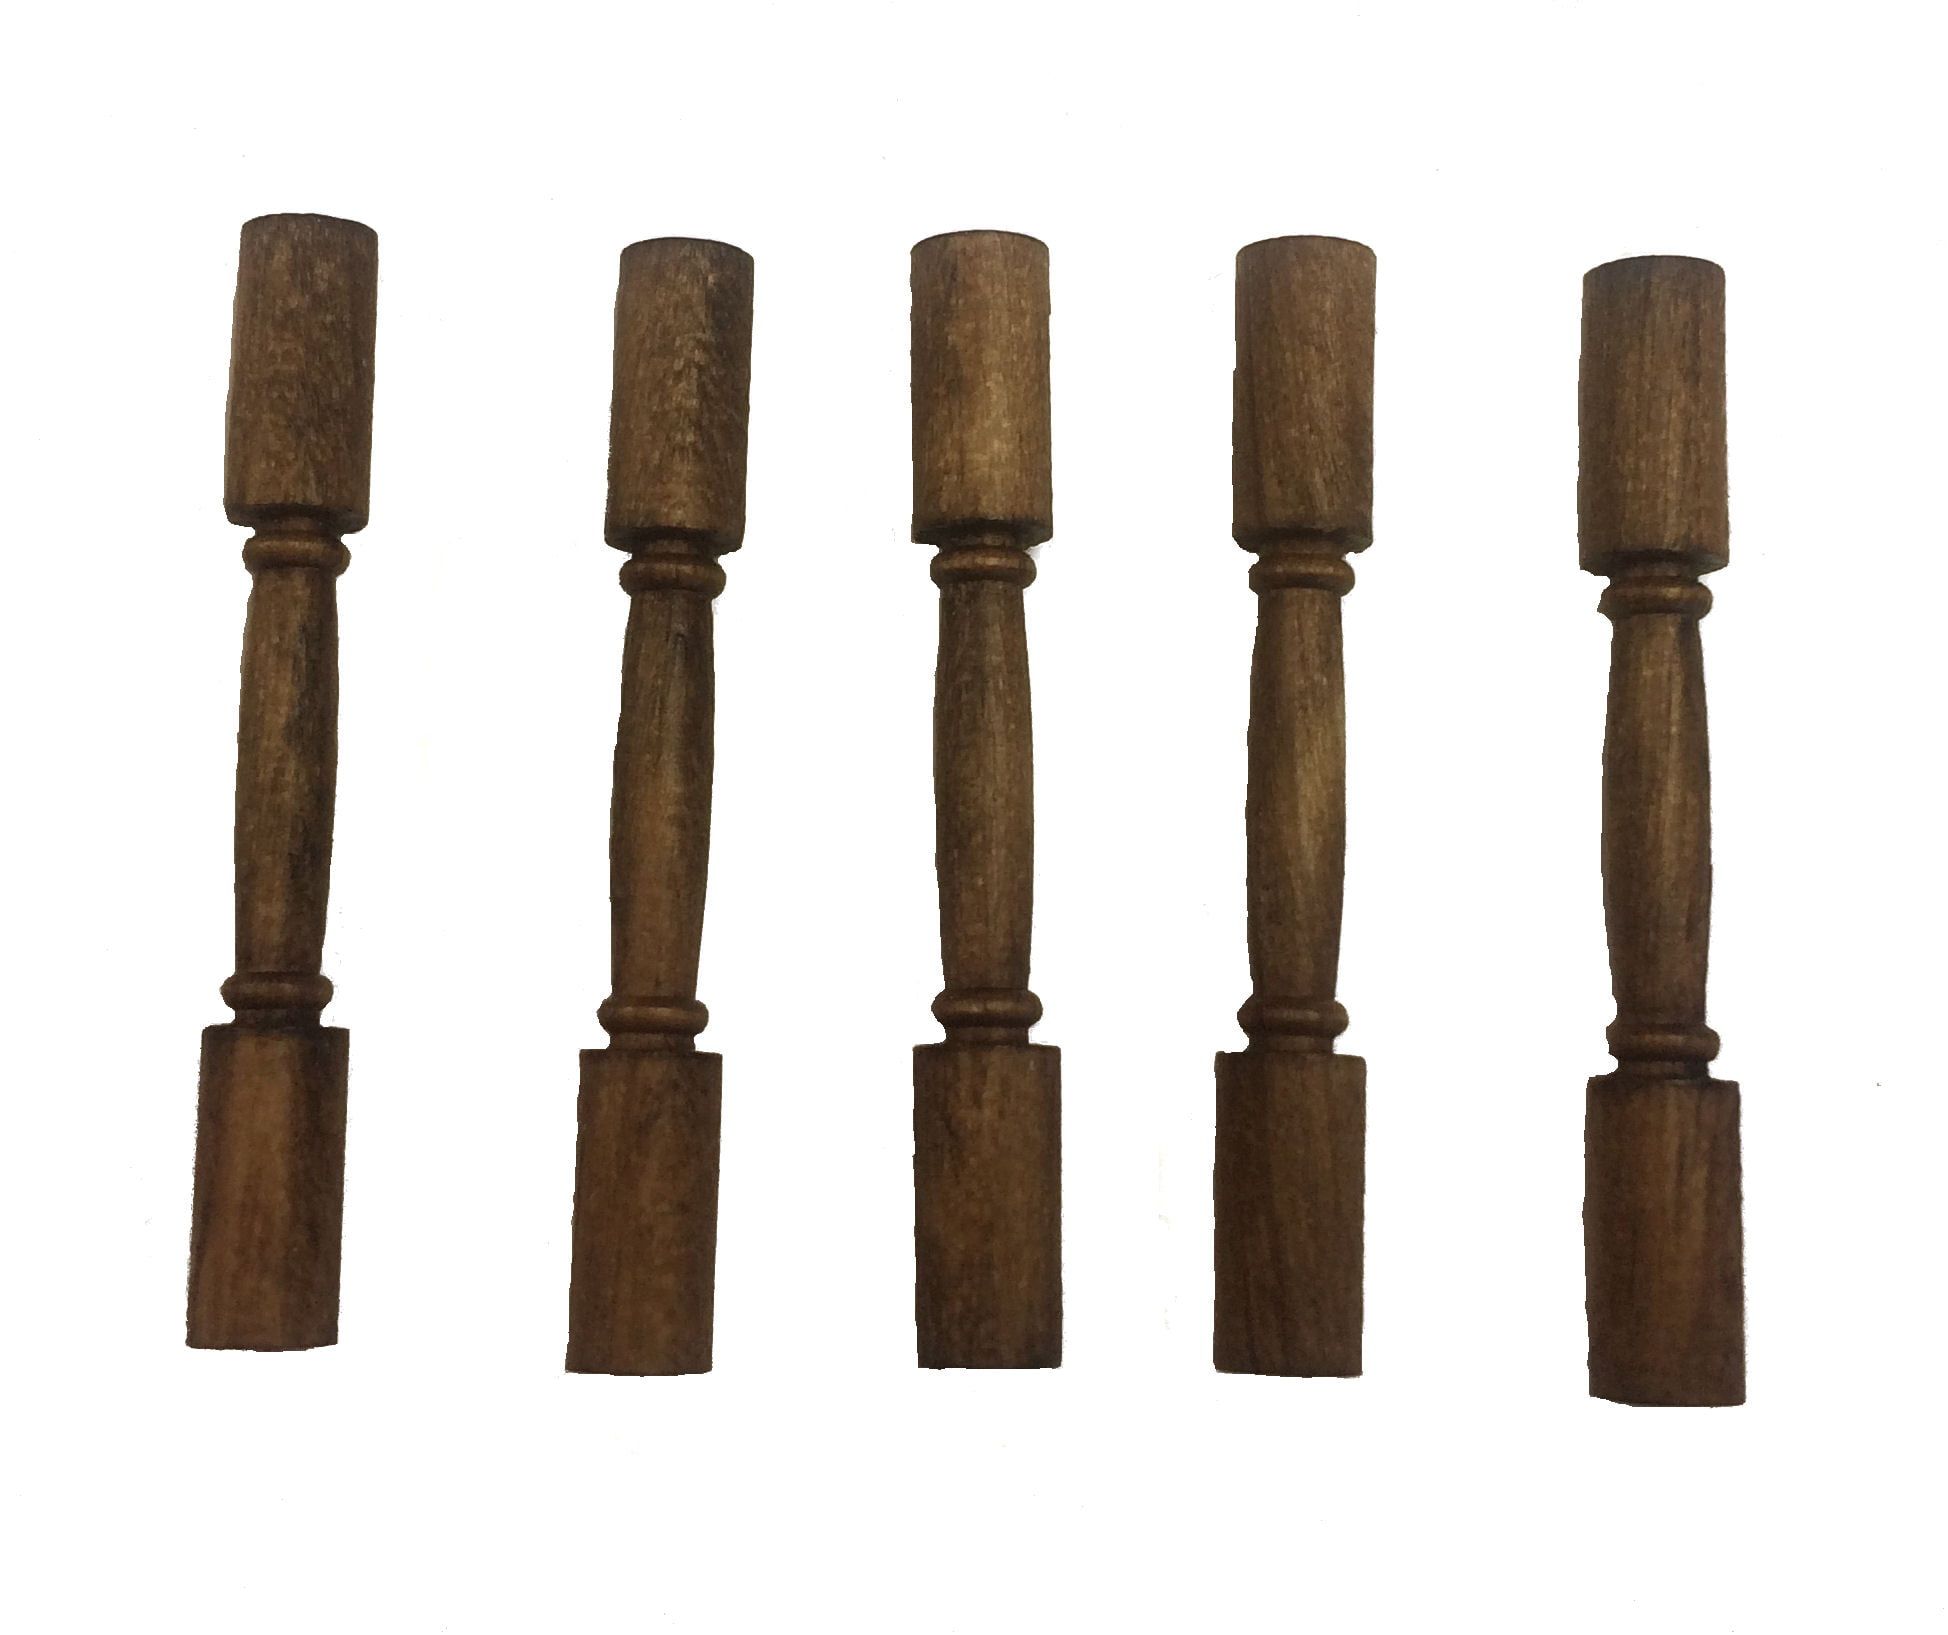 Caldercraft Wooden Columns 28mm